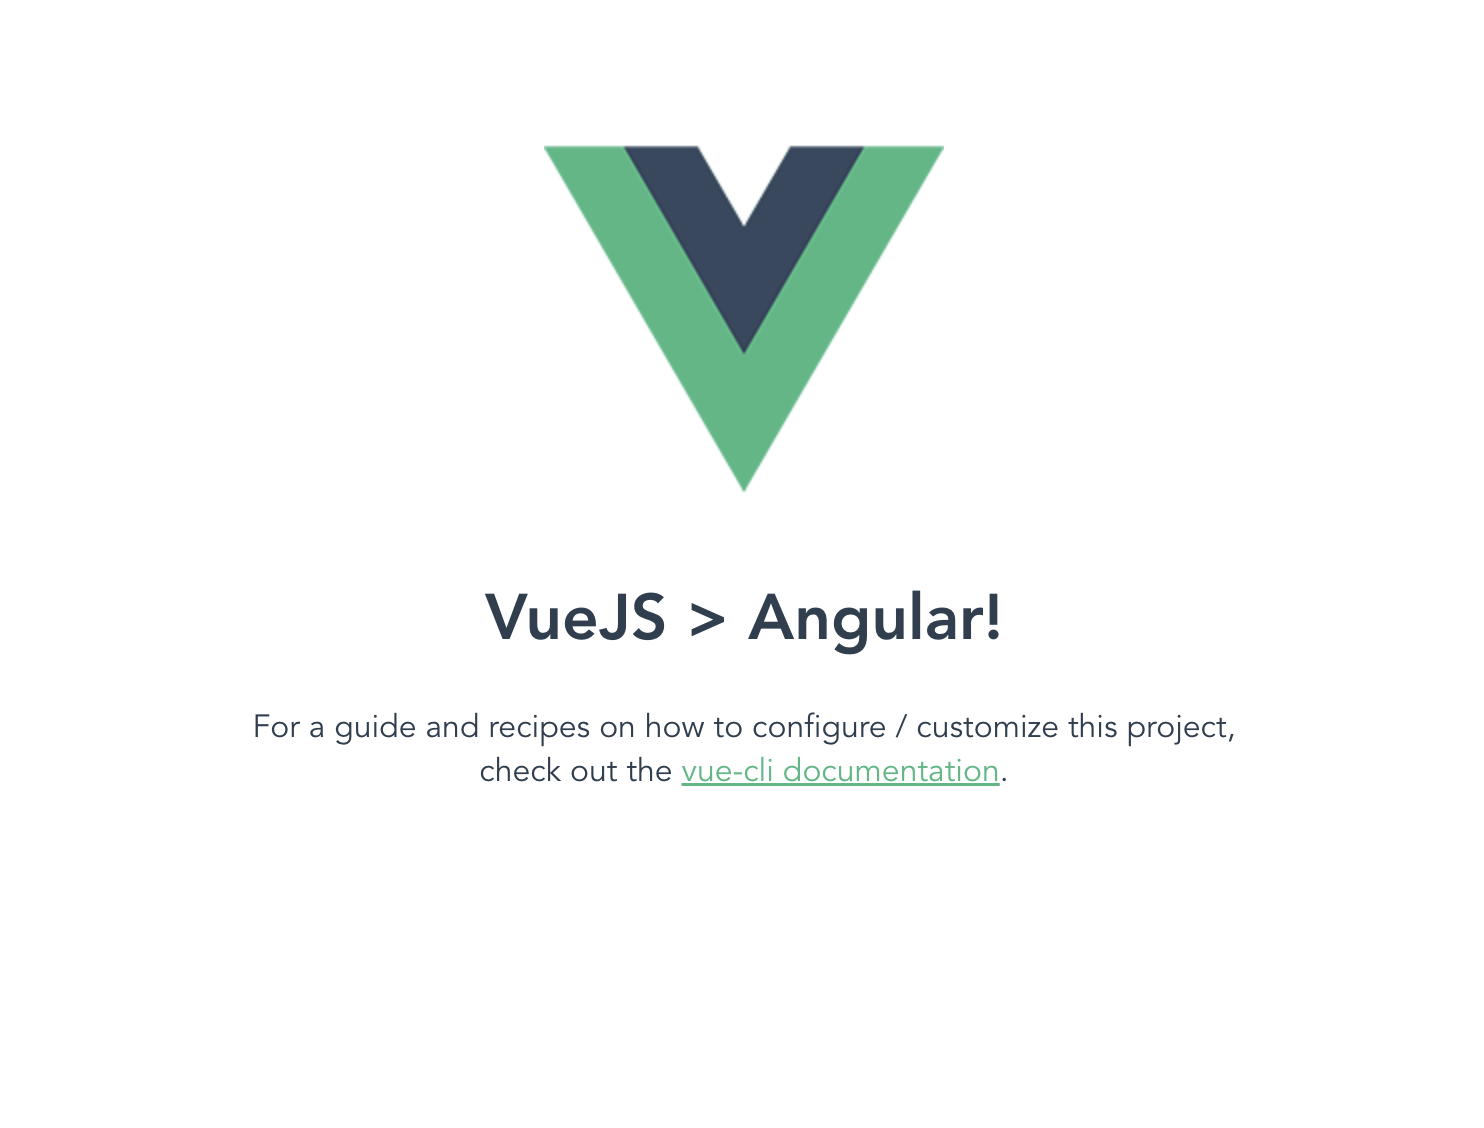 Building App in Vue JS vs Angular